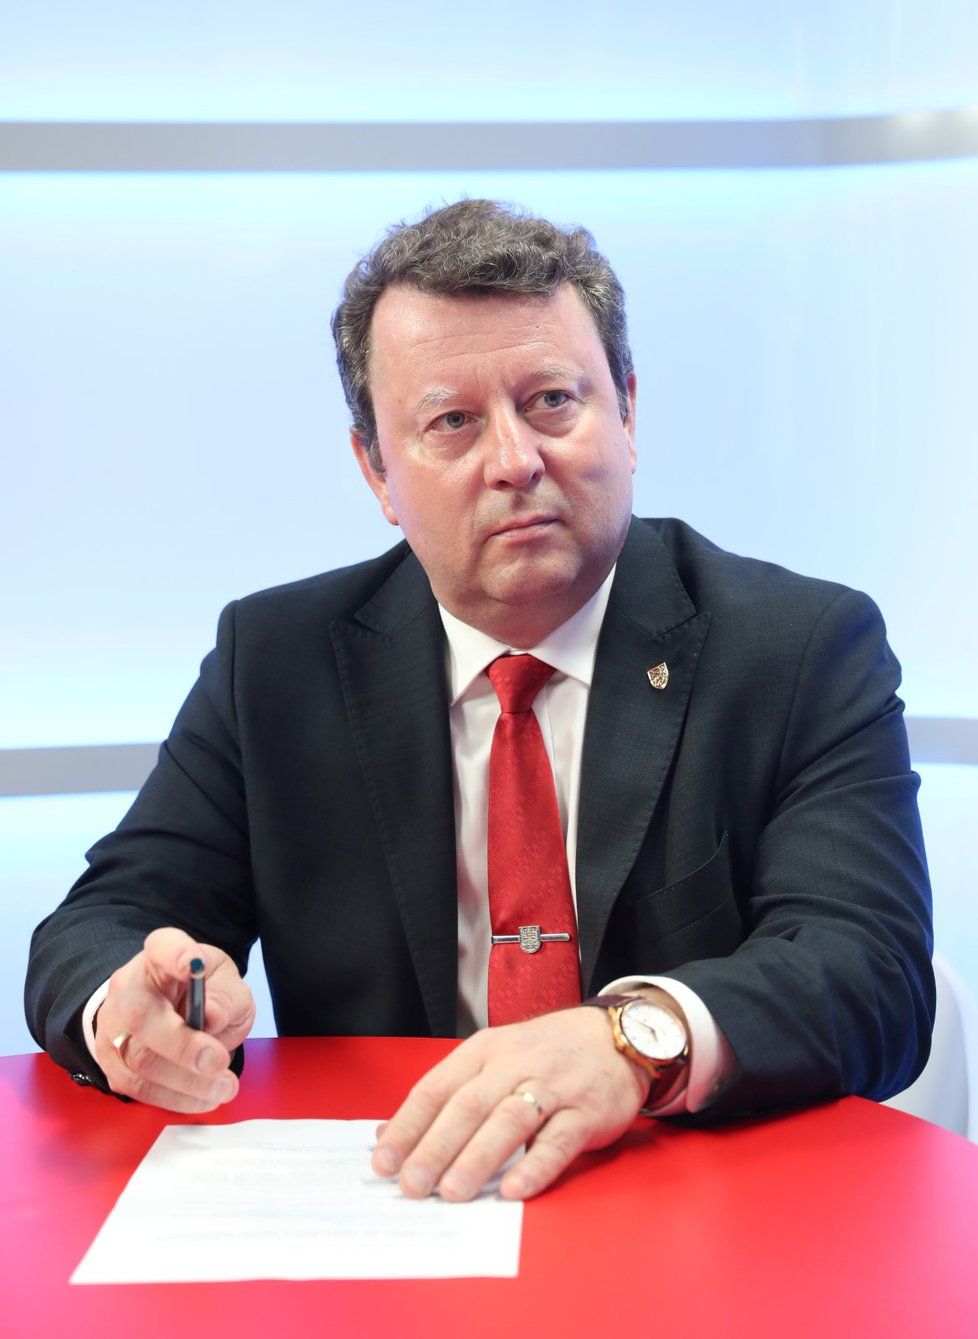 Ministr kultury Antonín Staněk (ČSSD) byl hostem pořadu epicentrum dne 29.4.2019.